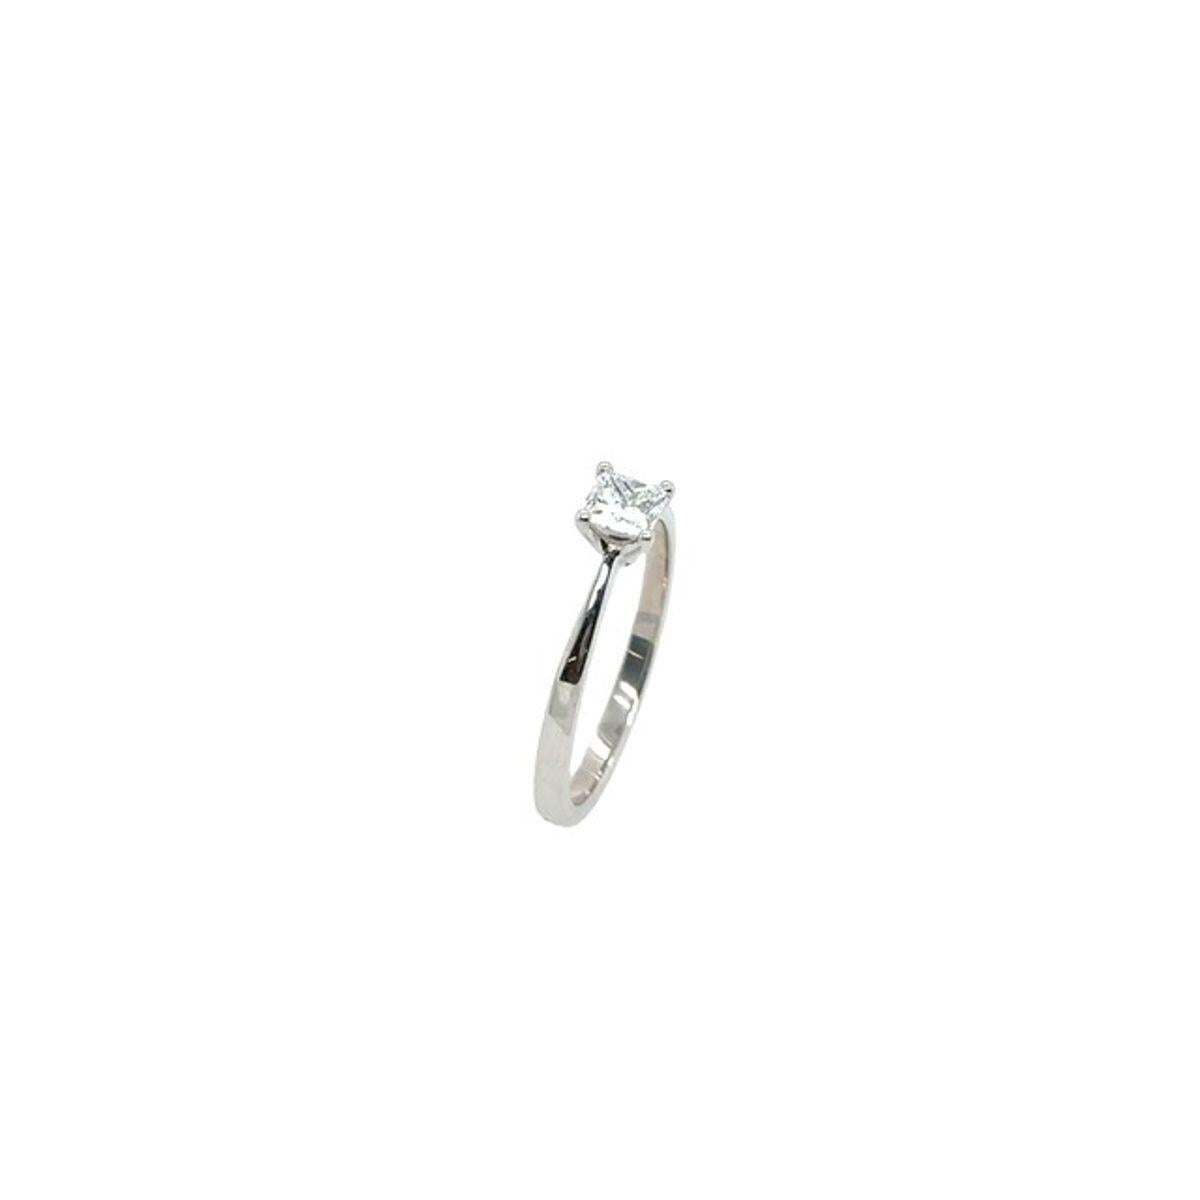 Ein eleganter Diamantring für Ihre Verlobung, besetzt mit einem natürlichen Diamanten im Prinzessschliff von 0,40ct F/VV1, gefasst in 18ct Weißgold.

Zusätzliche Informationen:
Gesamtgewicht der Diamanten: 0,40ct
Farbe des Diamanten: F
Diamant